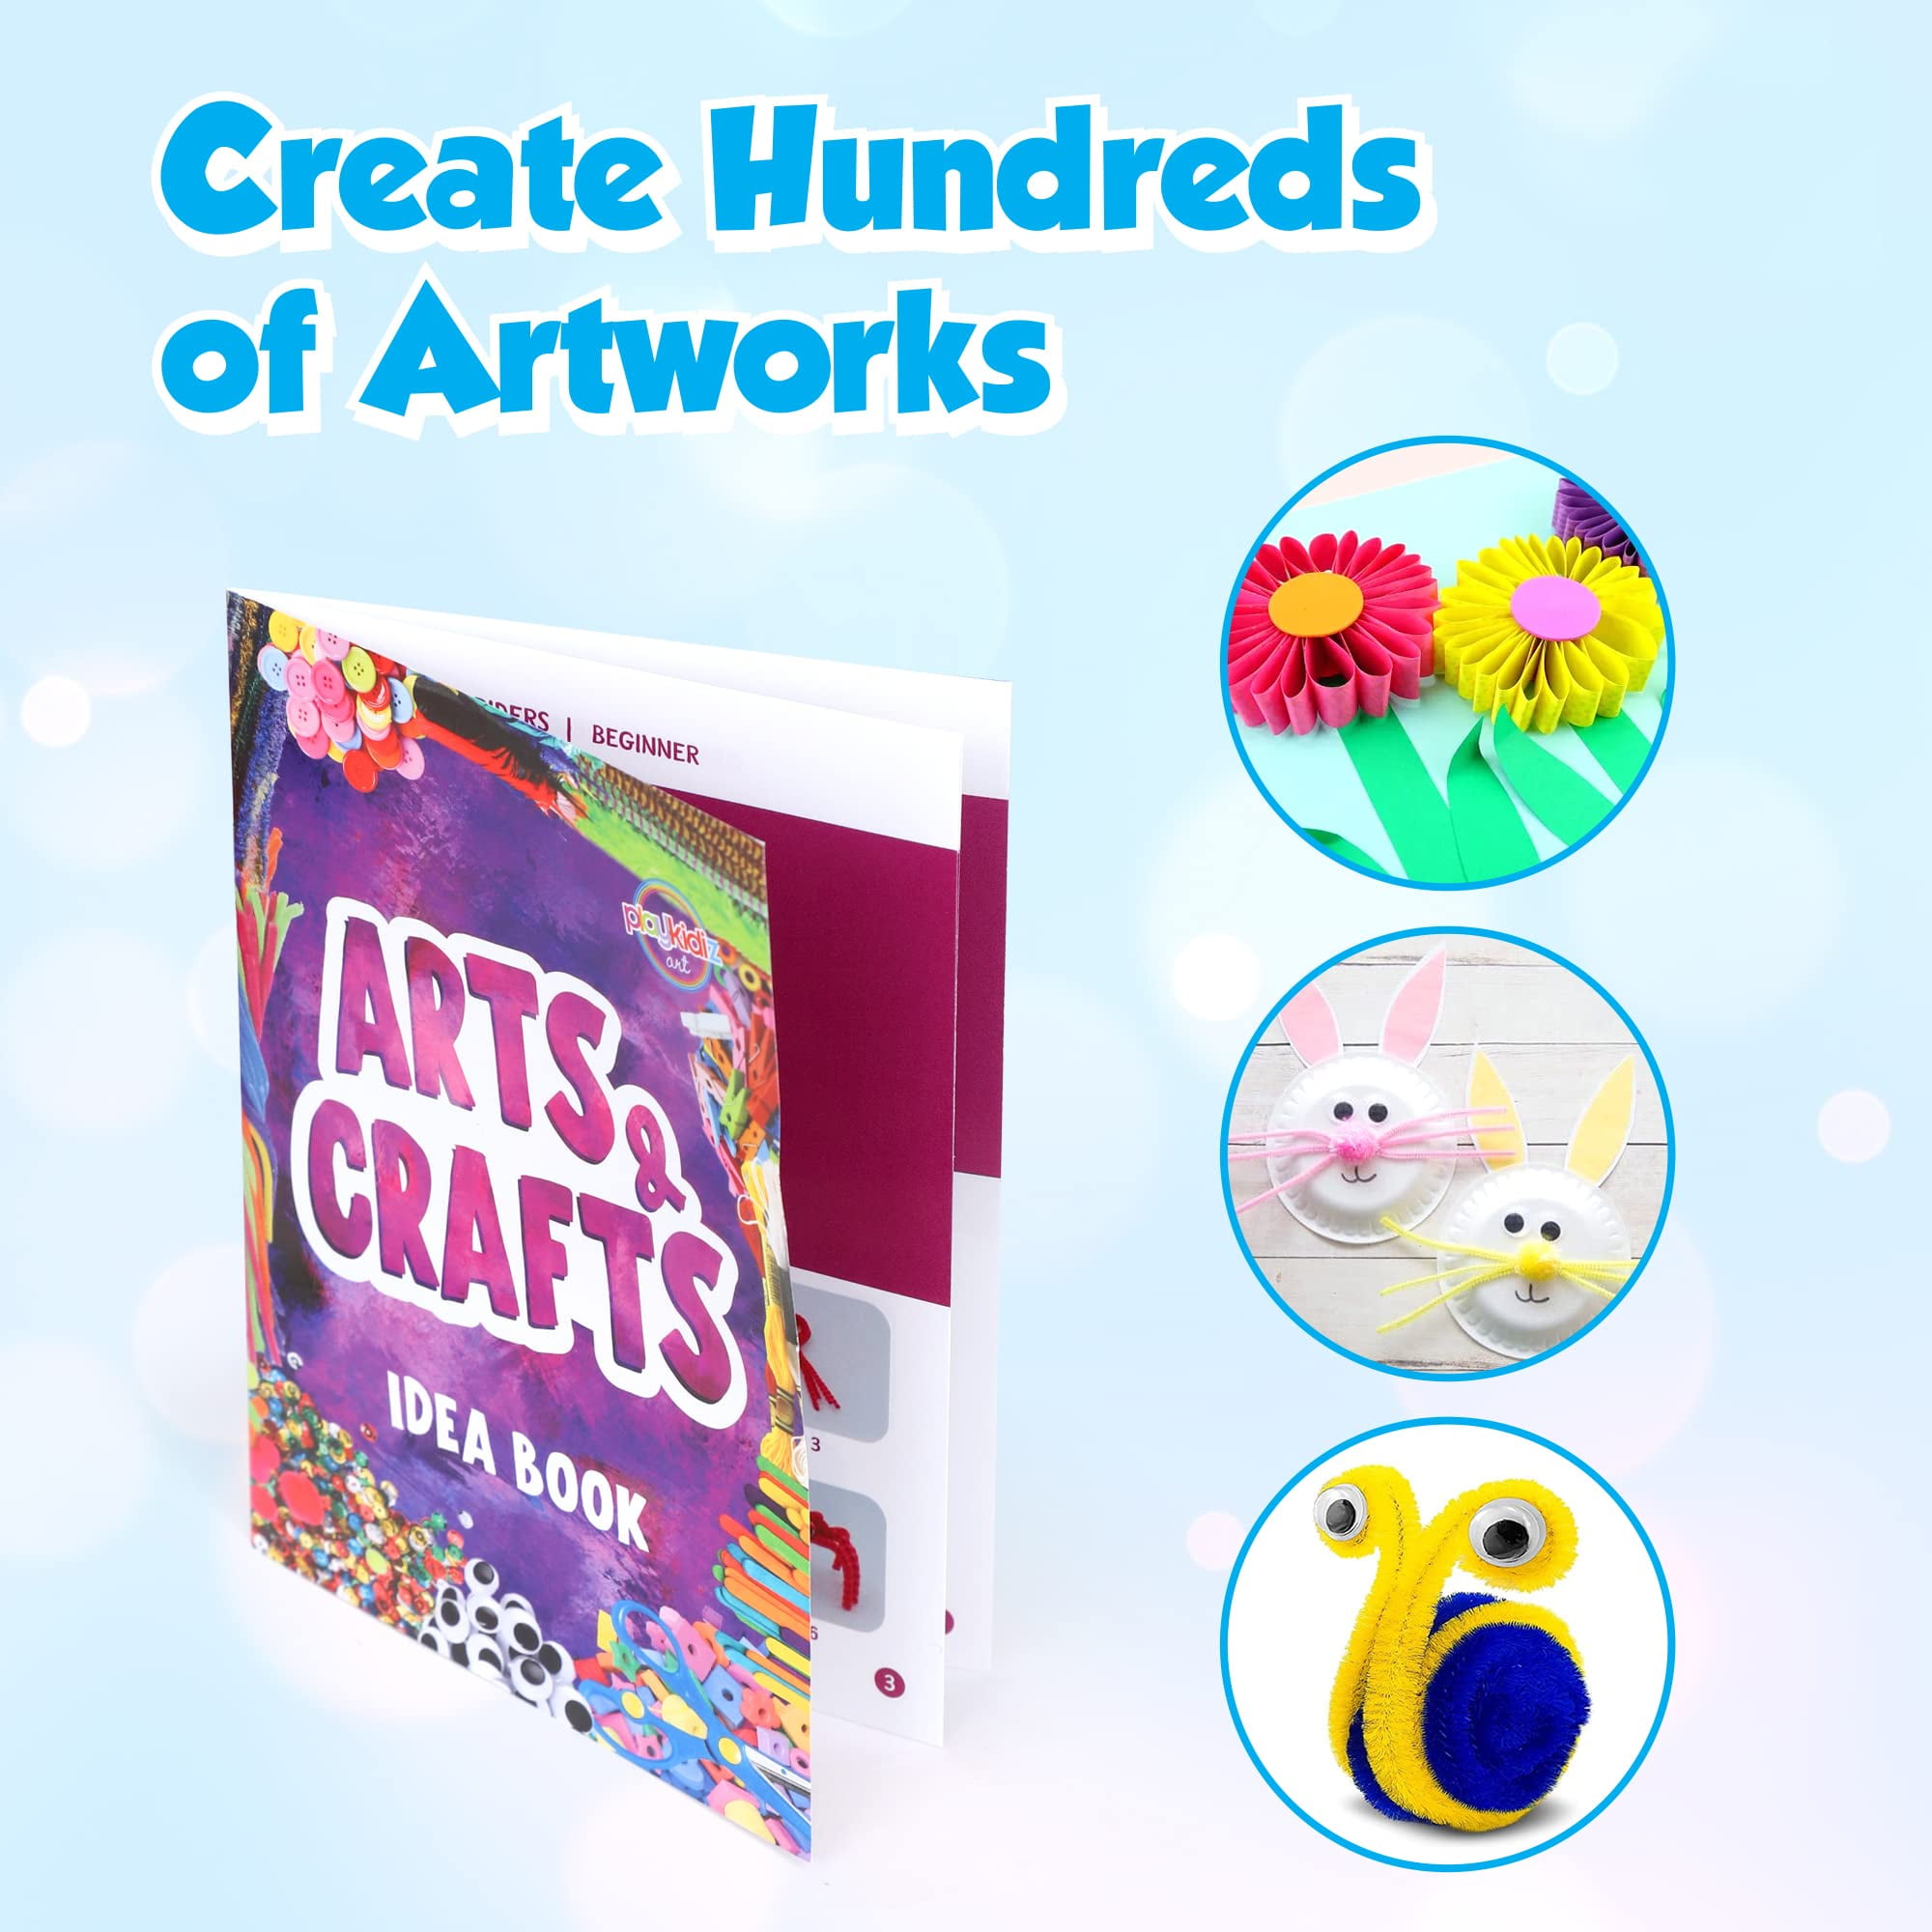 iStarcas Art Supplies, 325pcs Art kit, Drawing Supplies, Art Set, Art Kits  for Kids 4-6 6-8 9-12 Girls Boys Teens